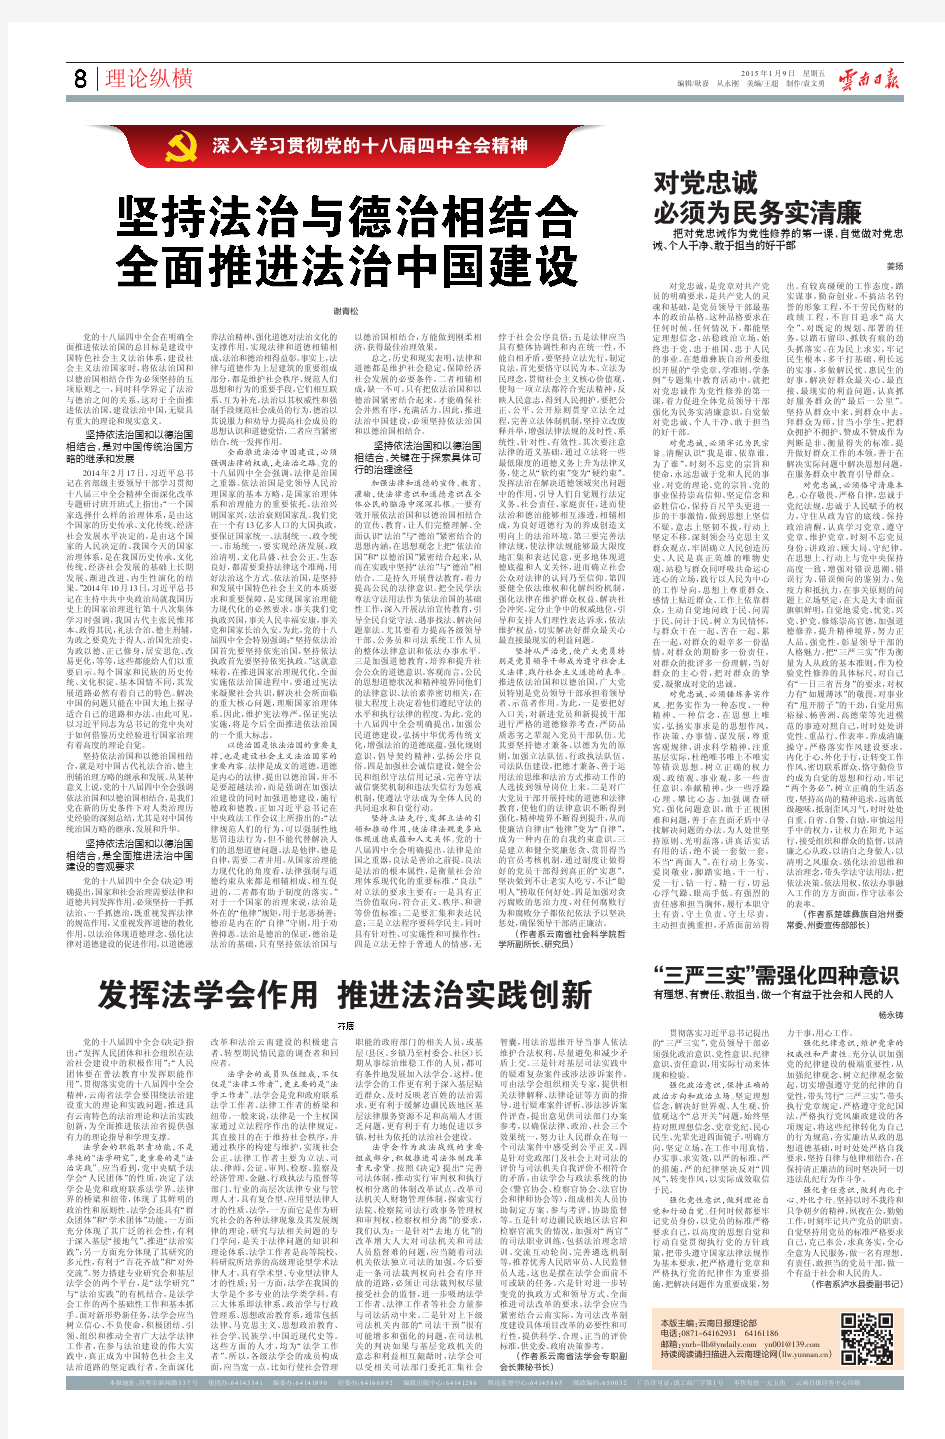 坚持法治与德治相结合 全面推进法治中国建设